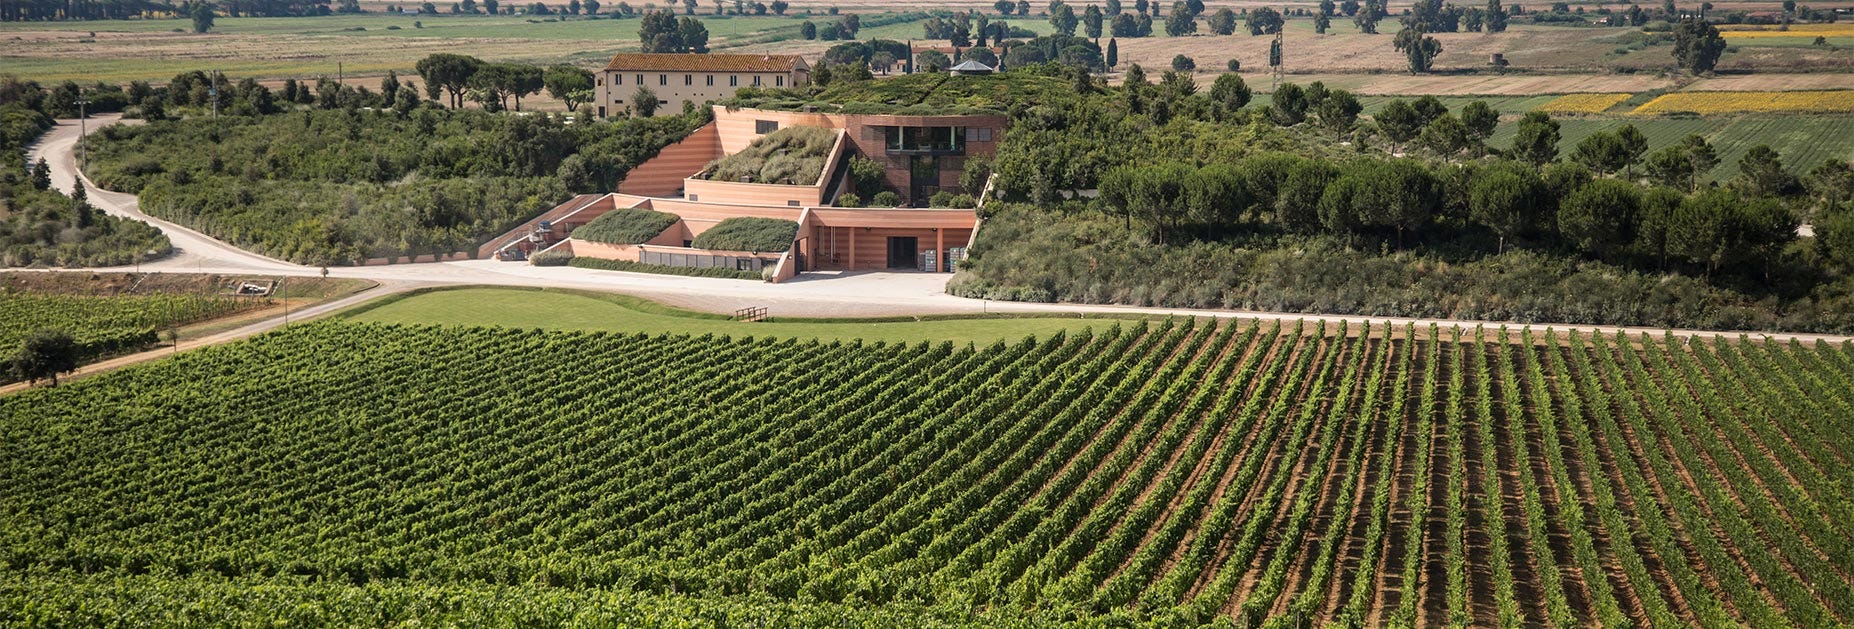 Rebbergen sowie das Hauptgebäude des Weinguts Le Mortelle in der Toskana welches ebenfalls zur Familiendynastie Antinori gehört